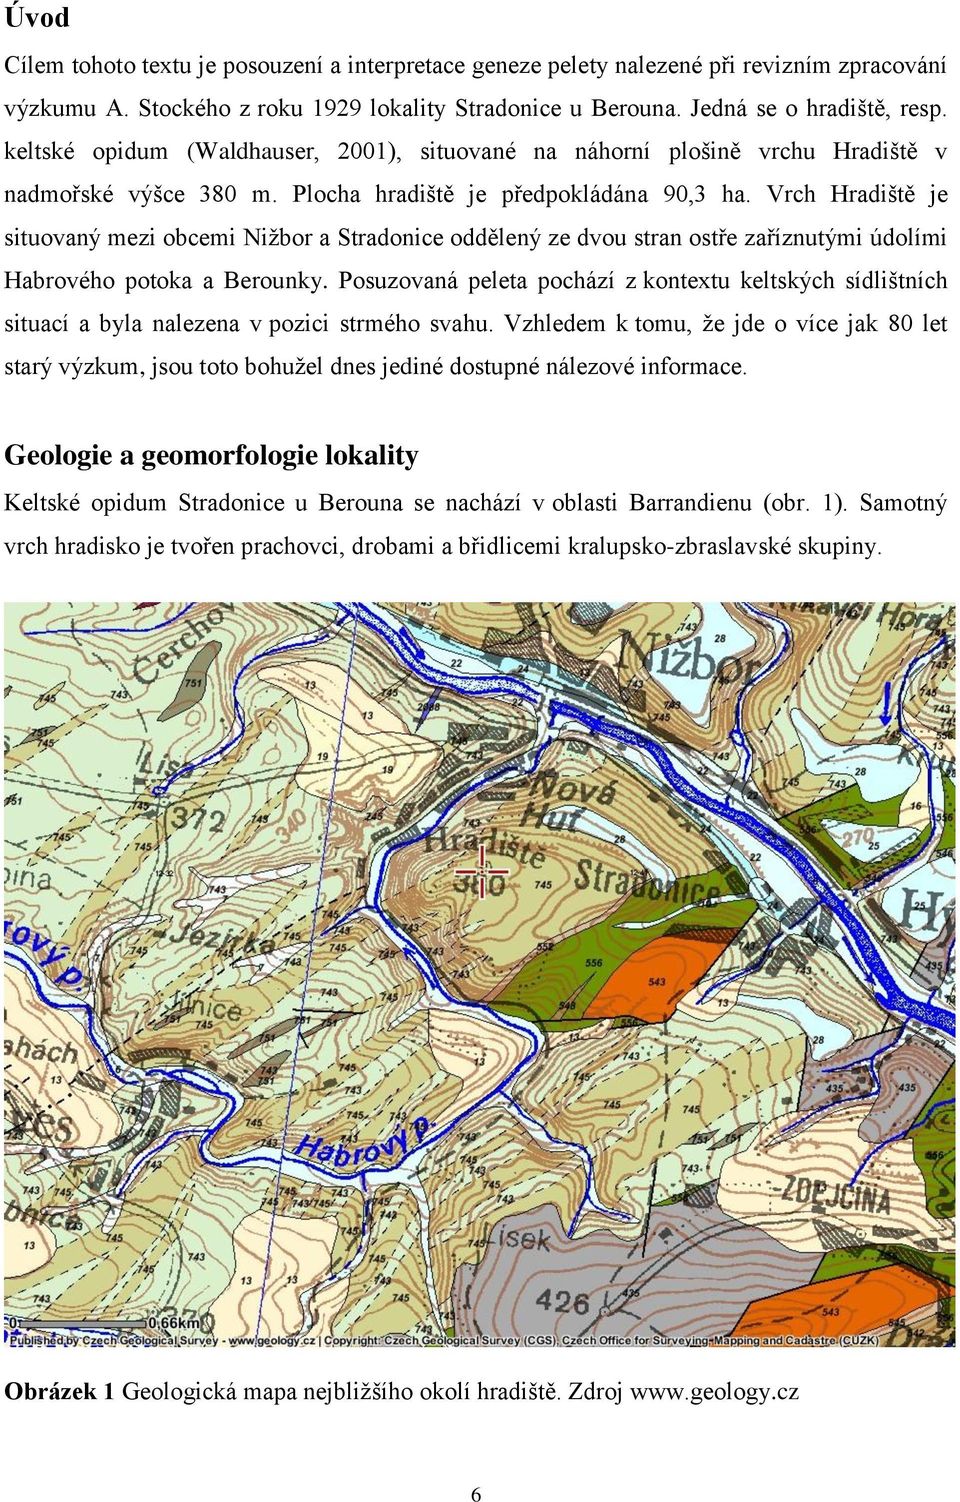 Vrch Hradiště je situovaný mezi obcemi Nižbor a Stradonice oddělený ze dvou stran ostře zaříznutými údolími Habrového potoka a Berounky.